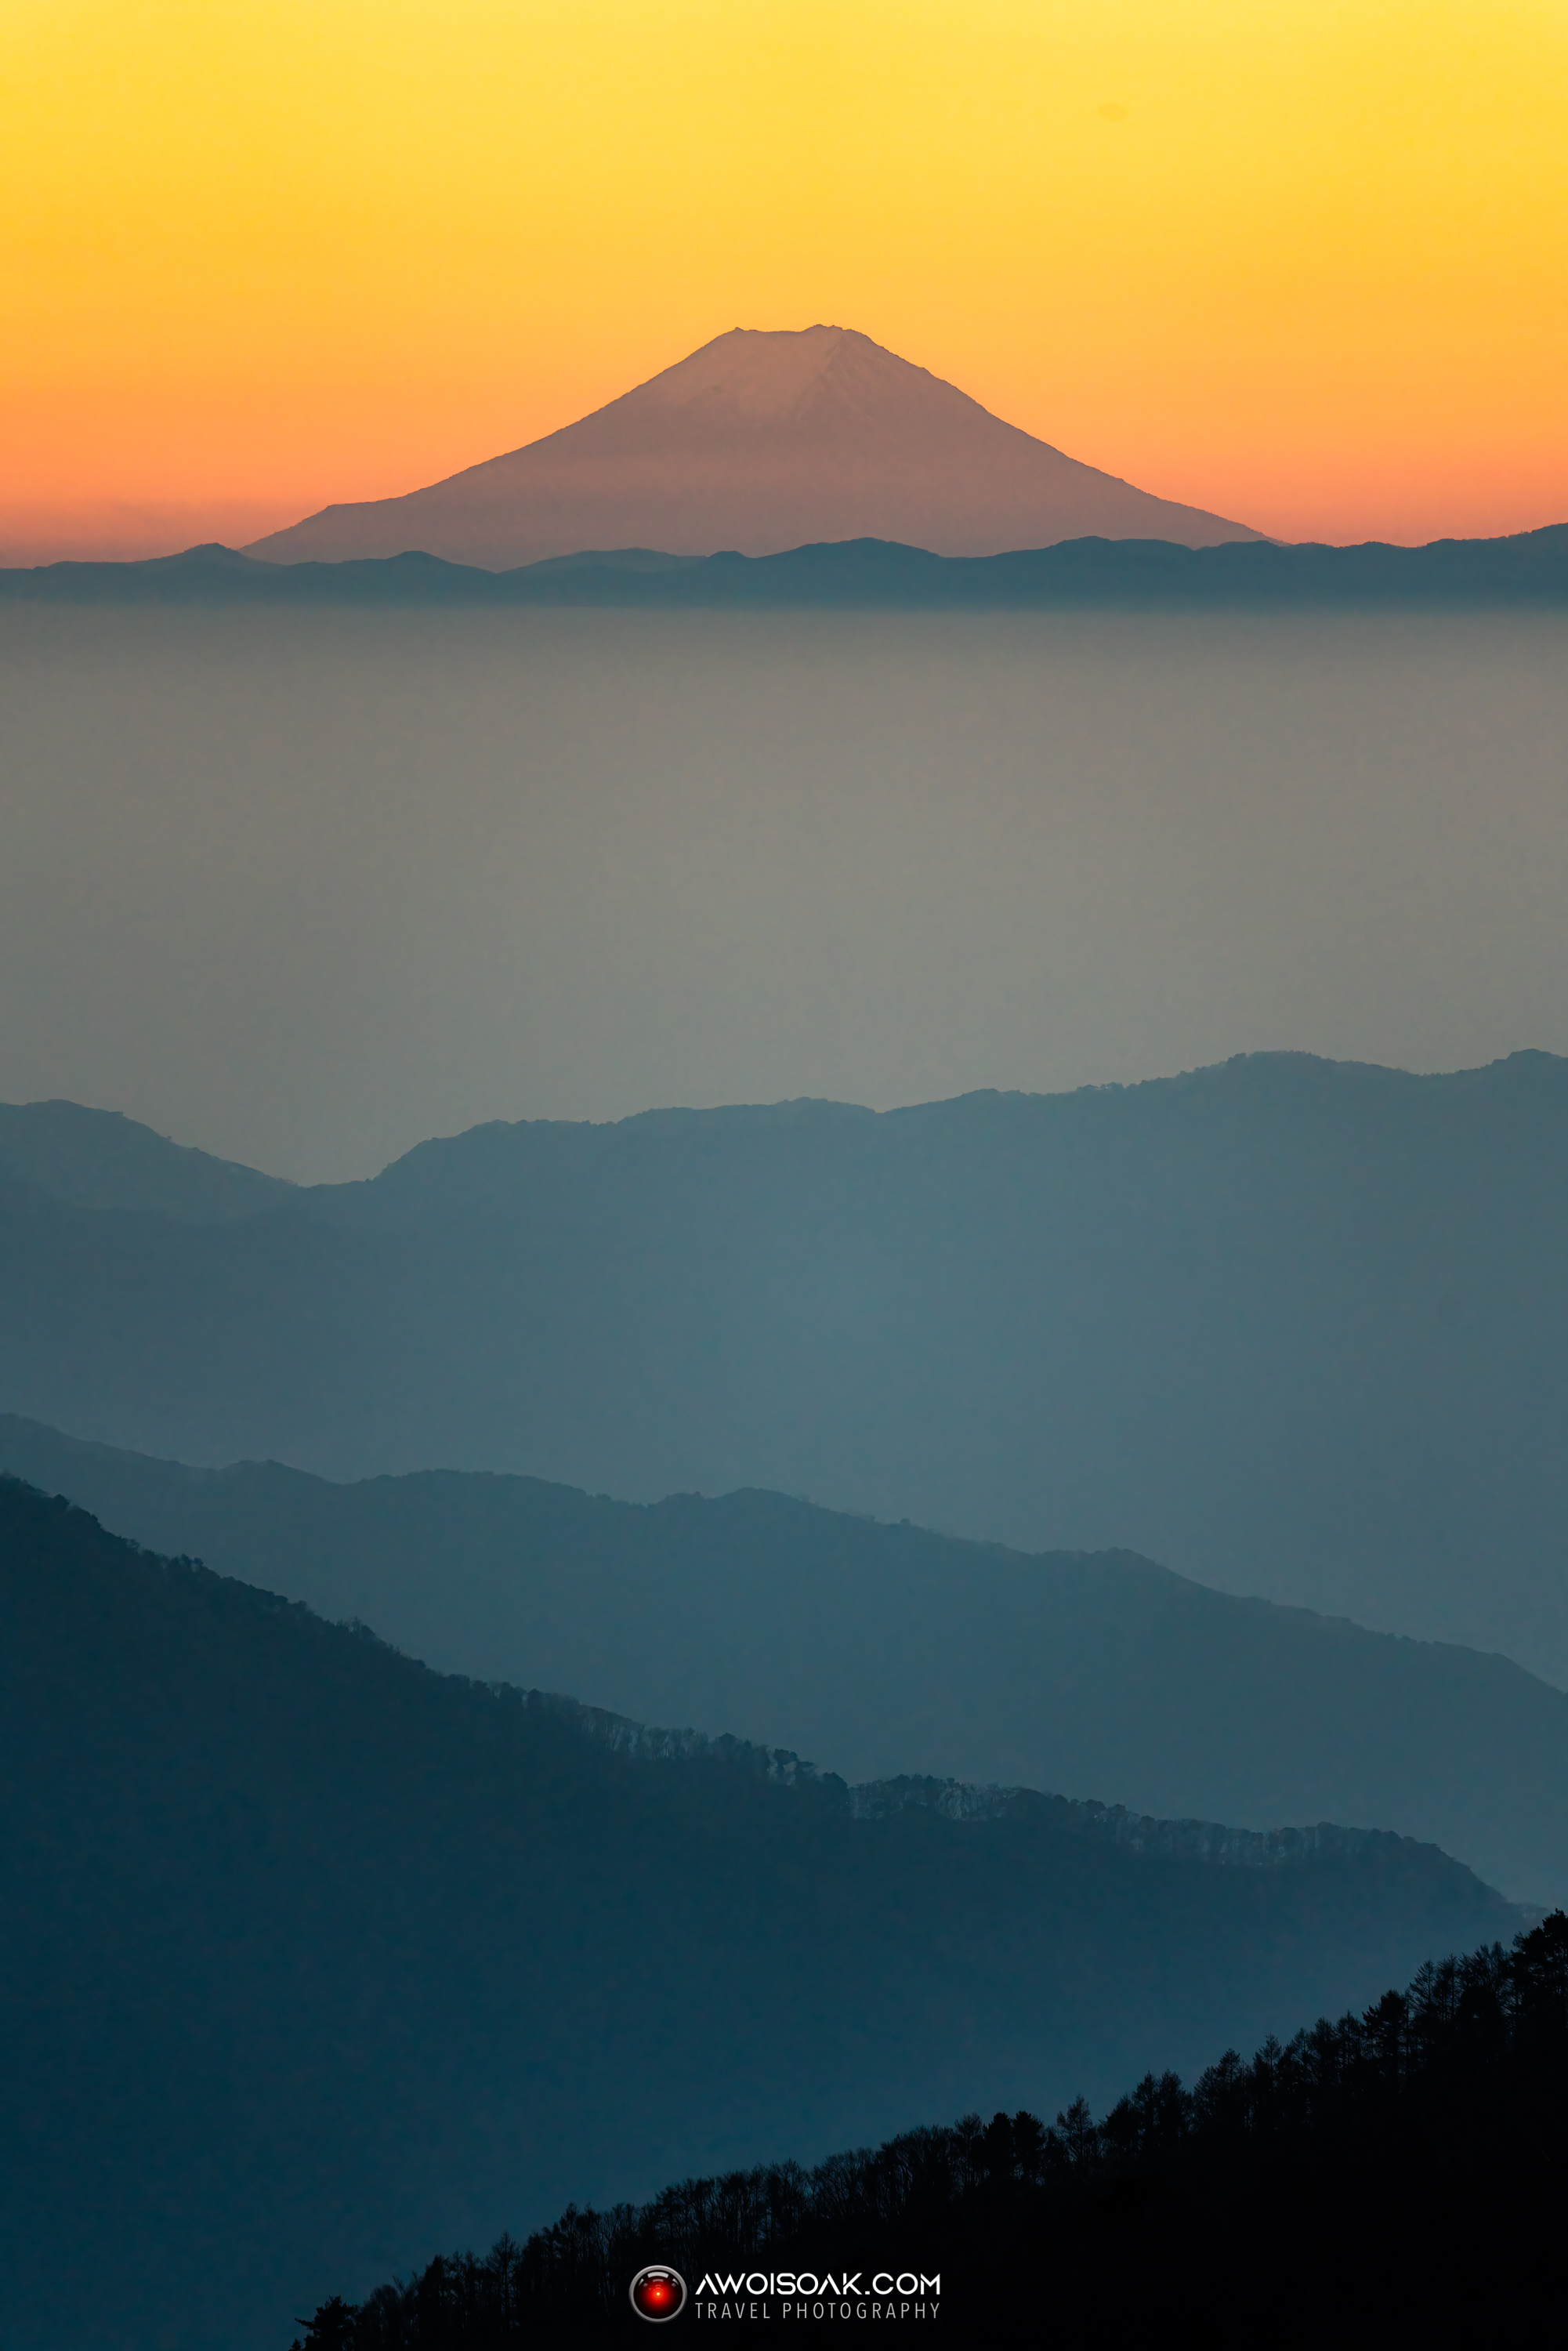 Mount Fuji from Nikko